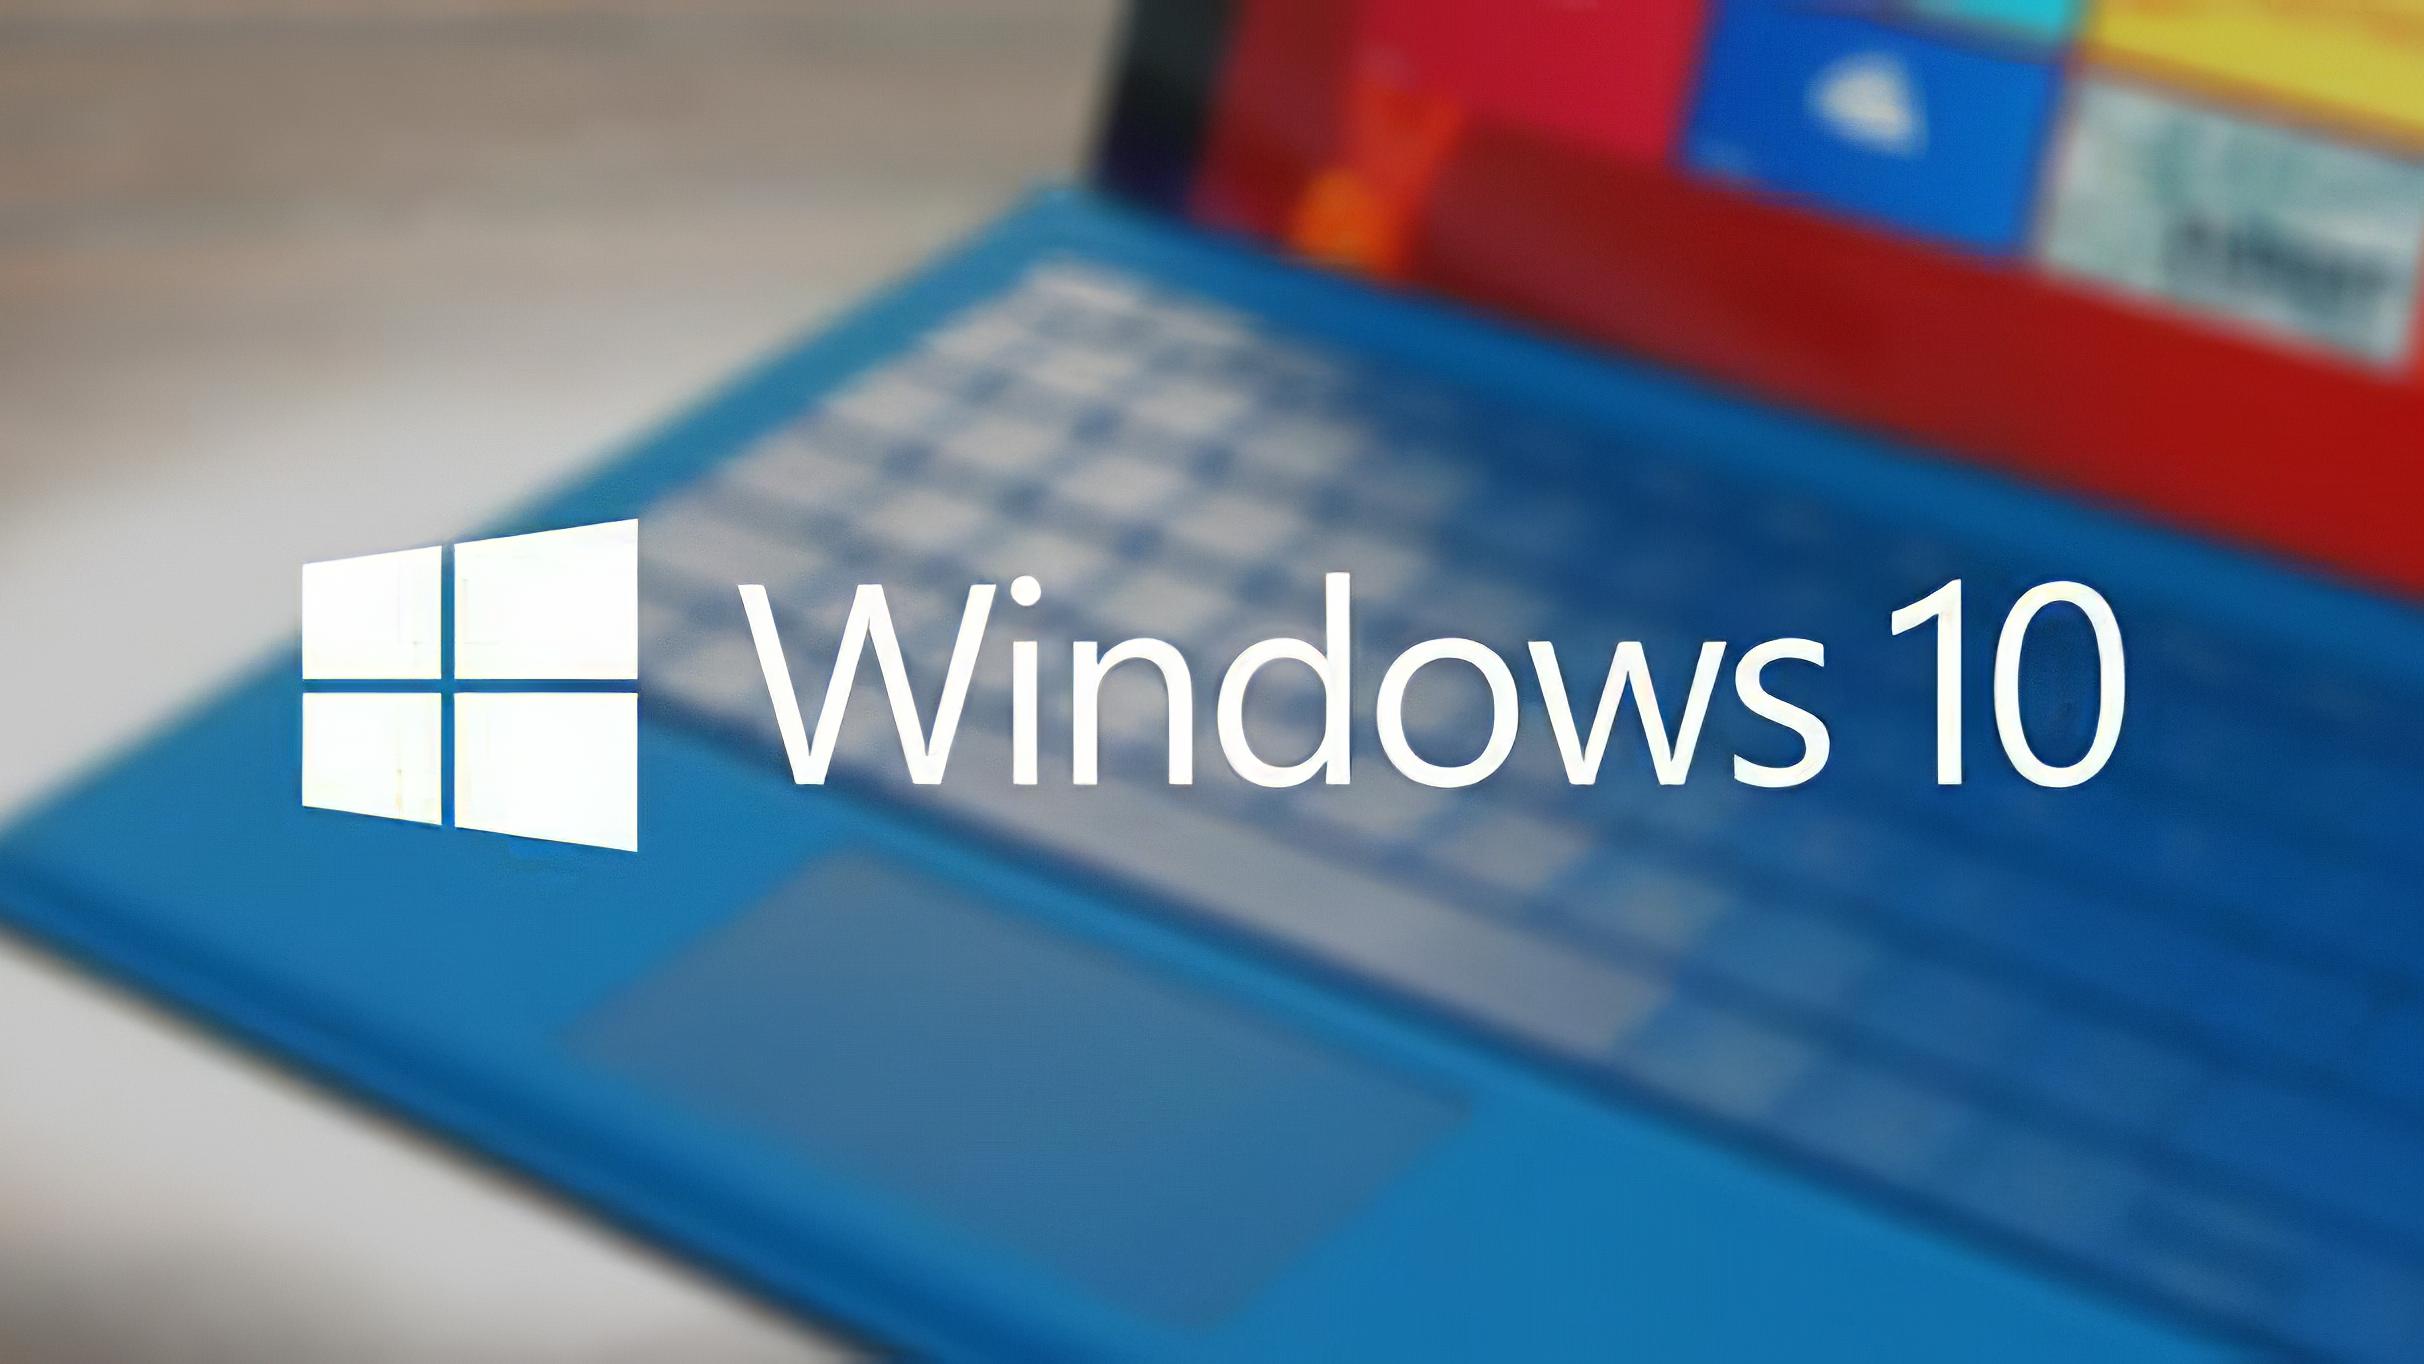 Windows|Windows10系统需要安装360安全套装吗？答案来了